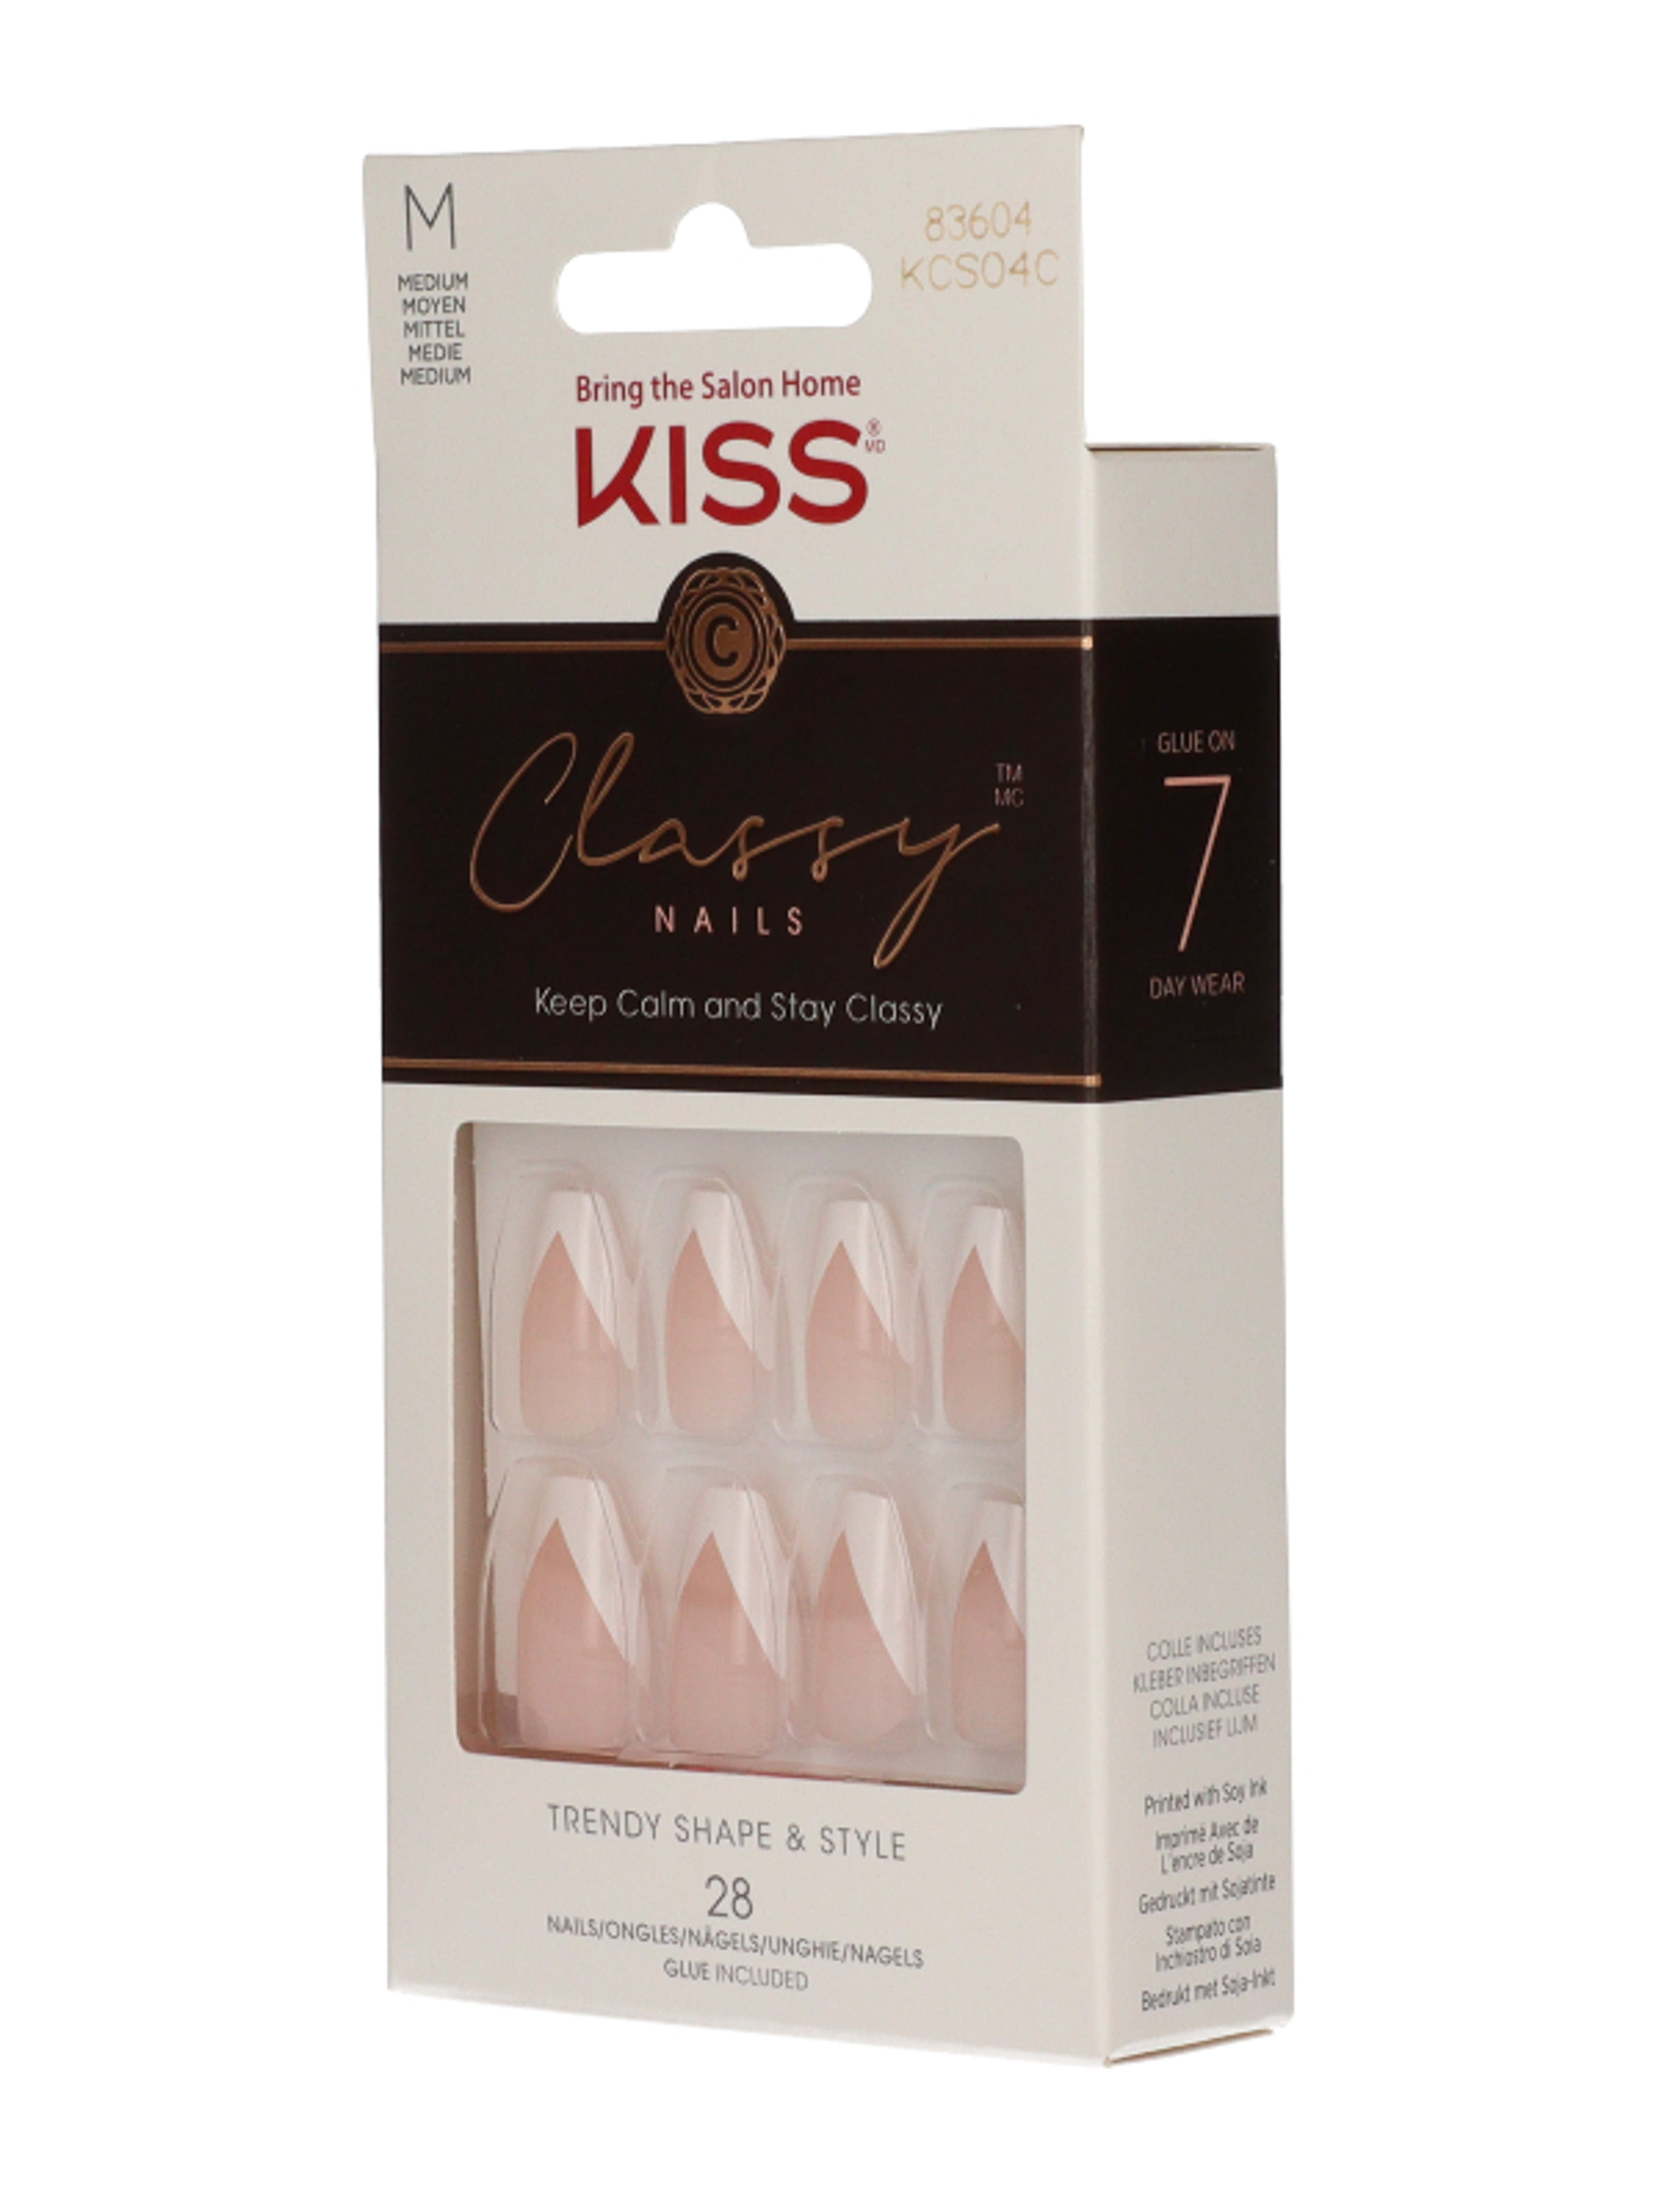 Kiss Classy Nails- Silk Dress műköröm - 1 db-2